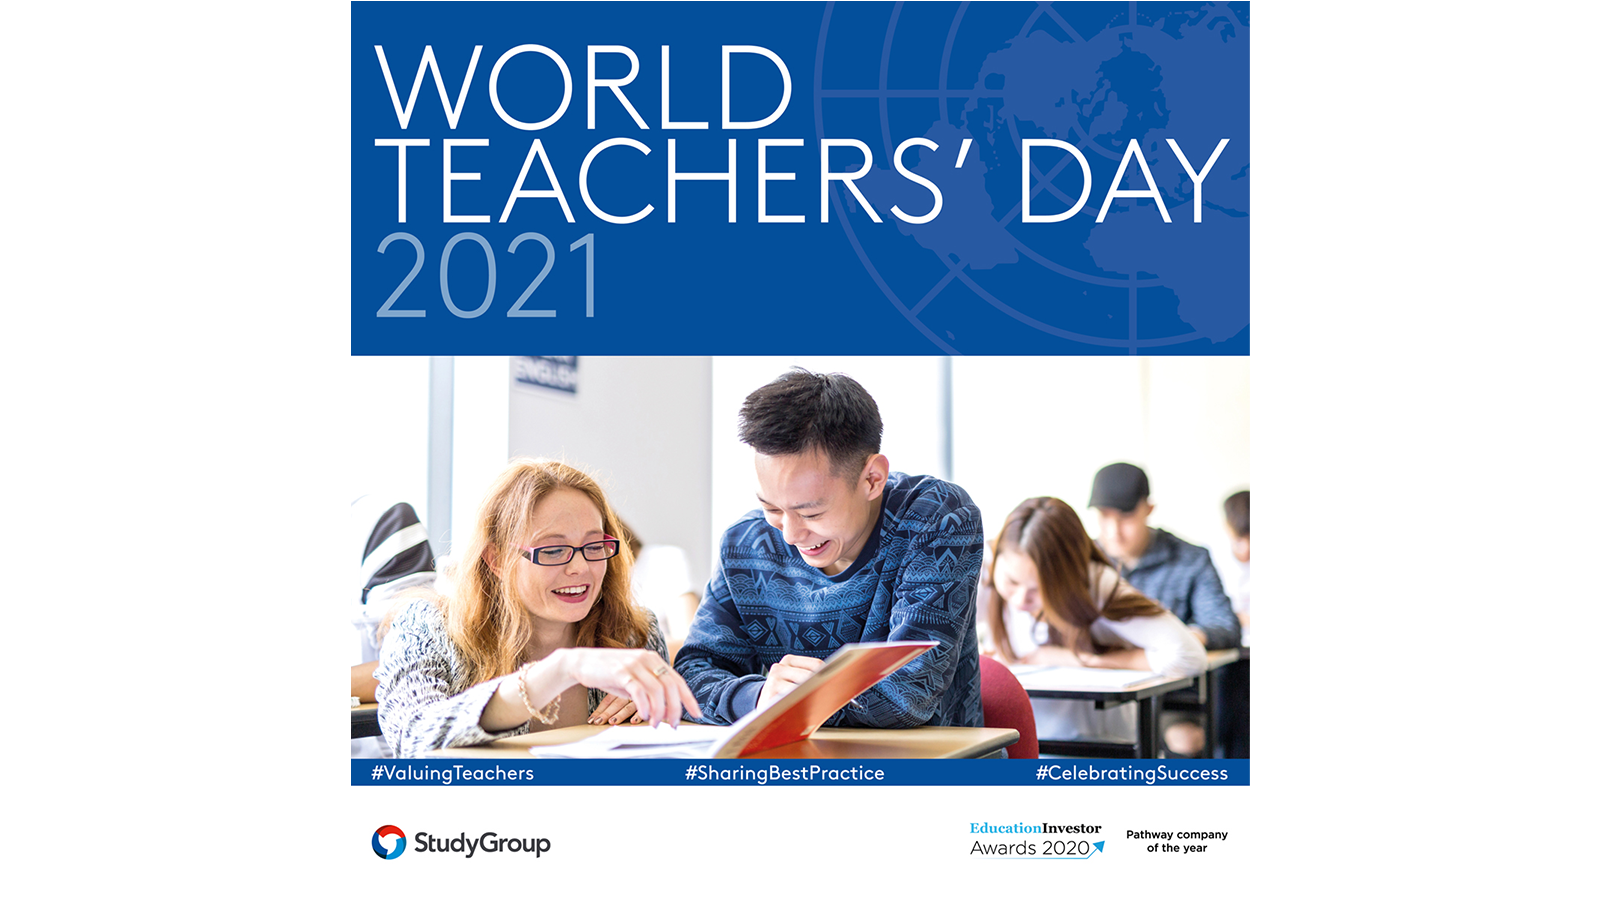 World Teachers’ Day 2021